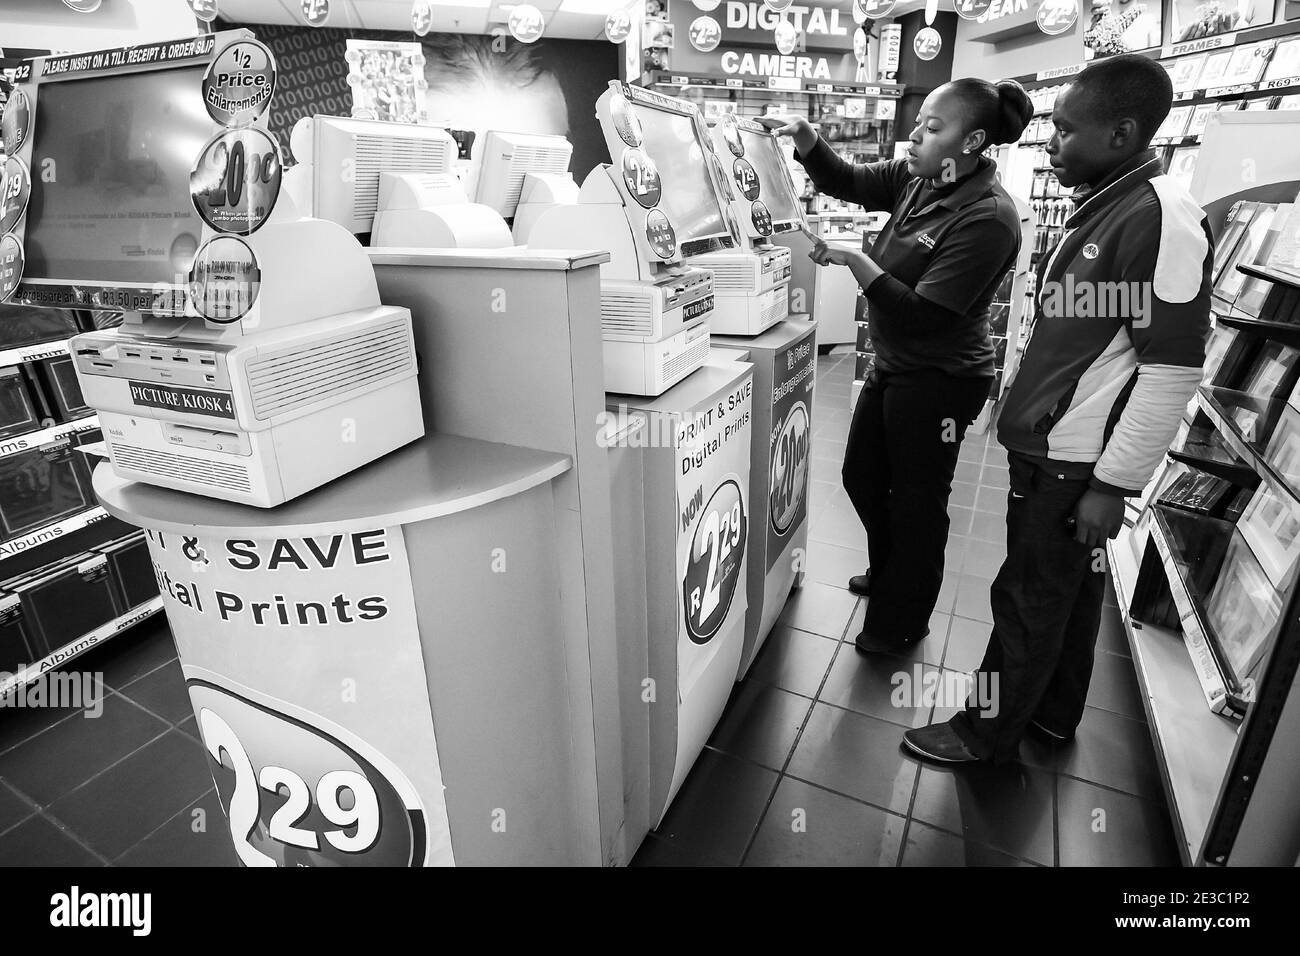 JOHANNESBURG, AFRIQUE DU SUD - 06 janvier 2021 : Johannesburg, Afrique du Sud - juillet 05 2011 : intérieur d'un laboratoire d'impression photo Kodak Express Banque D'Images